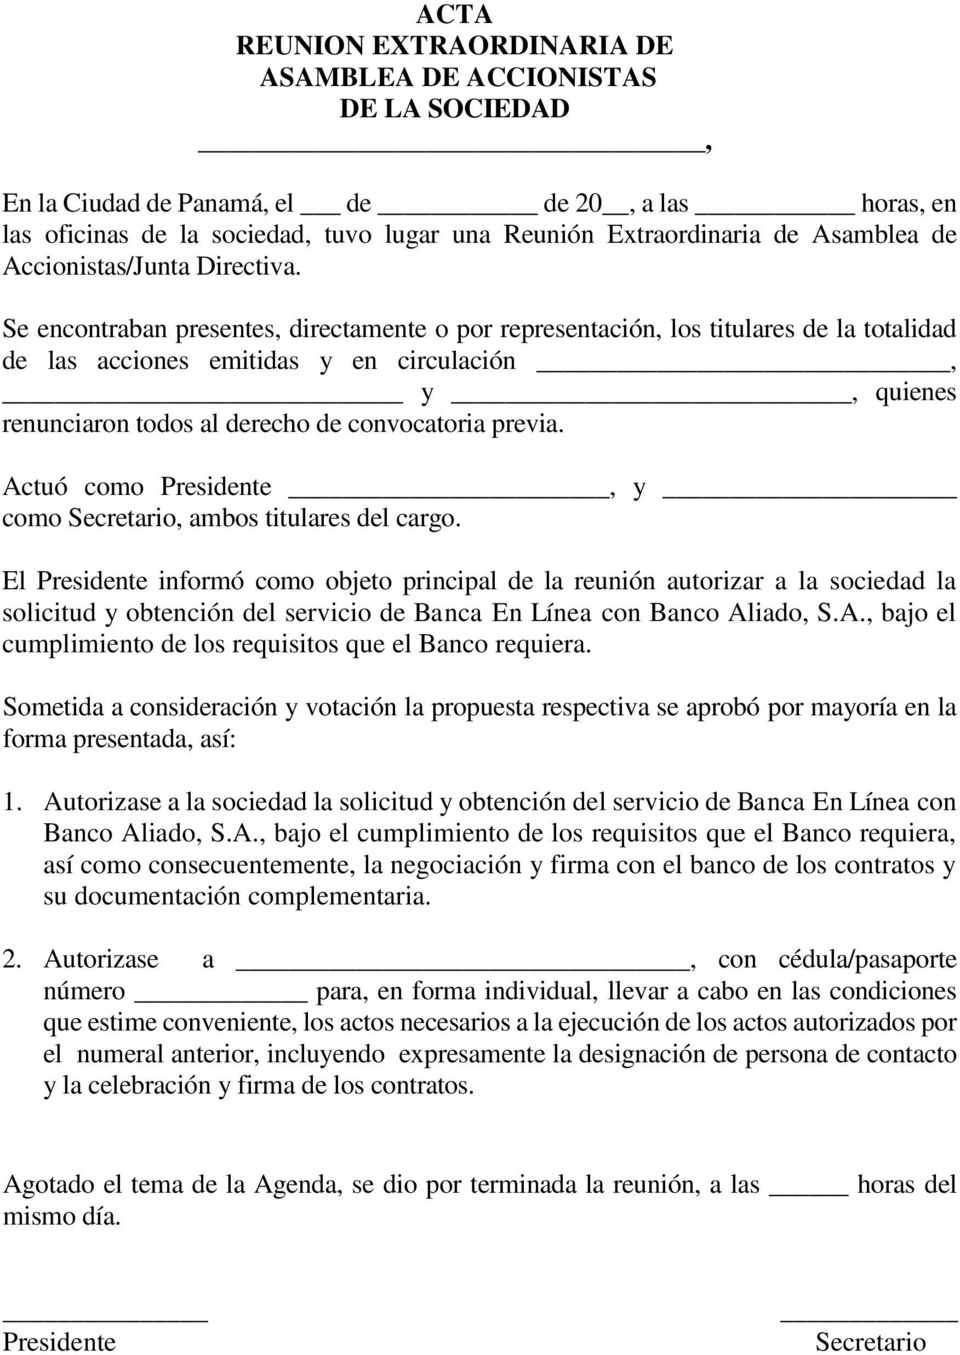 ACTA REUNION EXTRAORDINARIA DE ASAMBLEA DE ACCIONISTAS DE LA SOCIEDAD, -  PDF Descargar libre